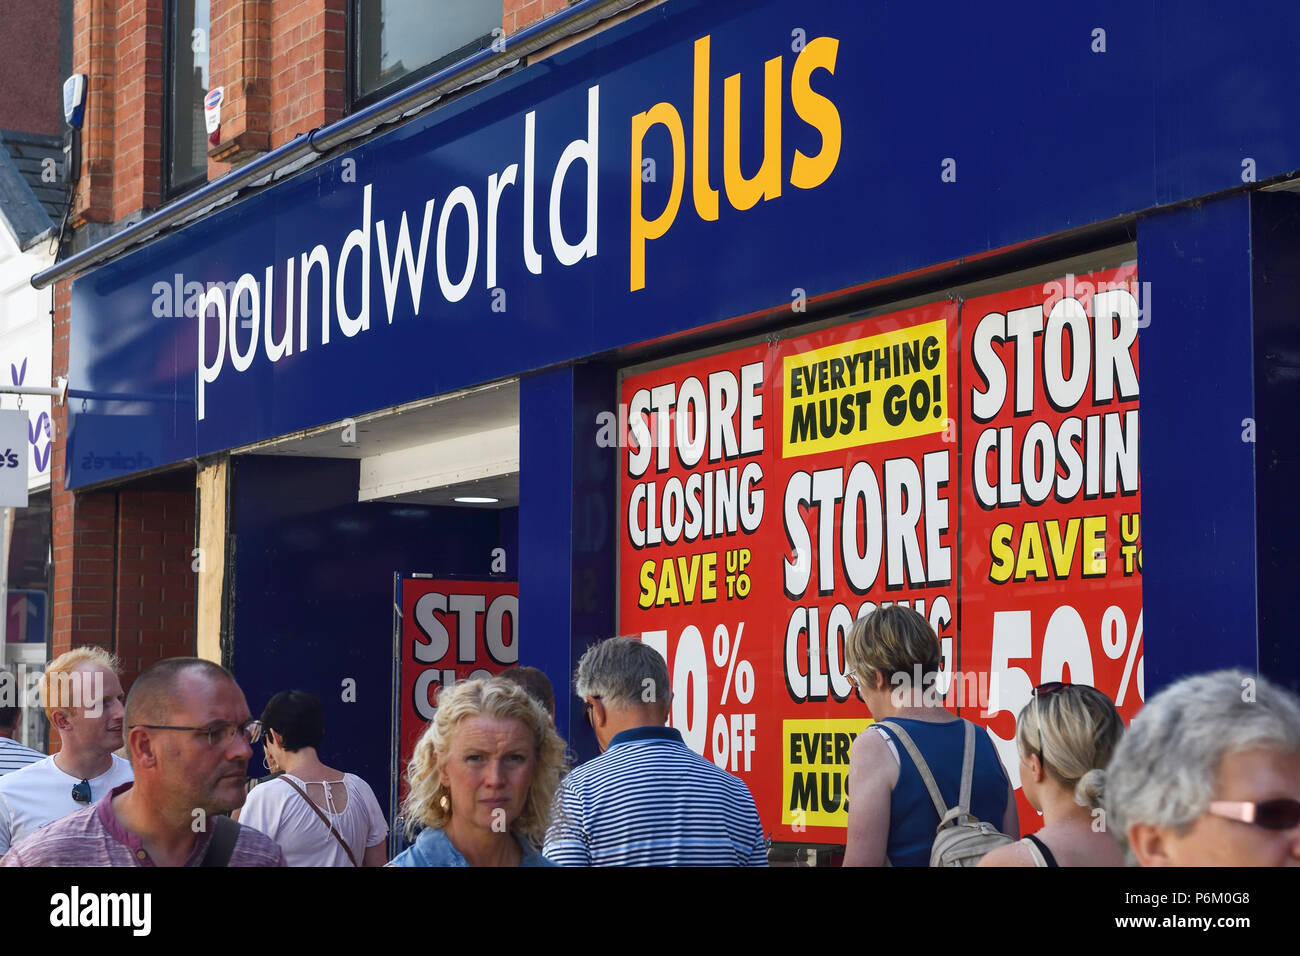 Il Poundworld Plus store a Chester Regno Unito con segni nella finestra che annuncia la vendita e la chiusura del negozio Foto Stock